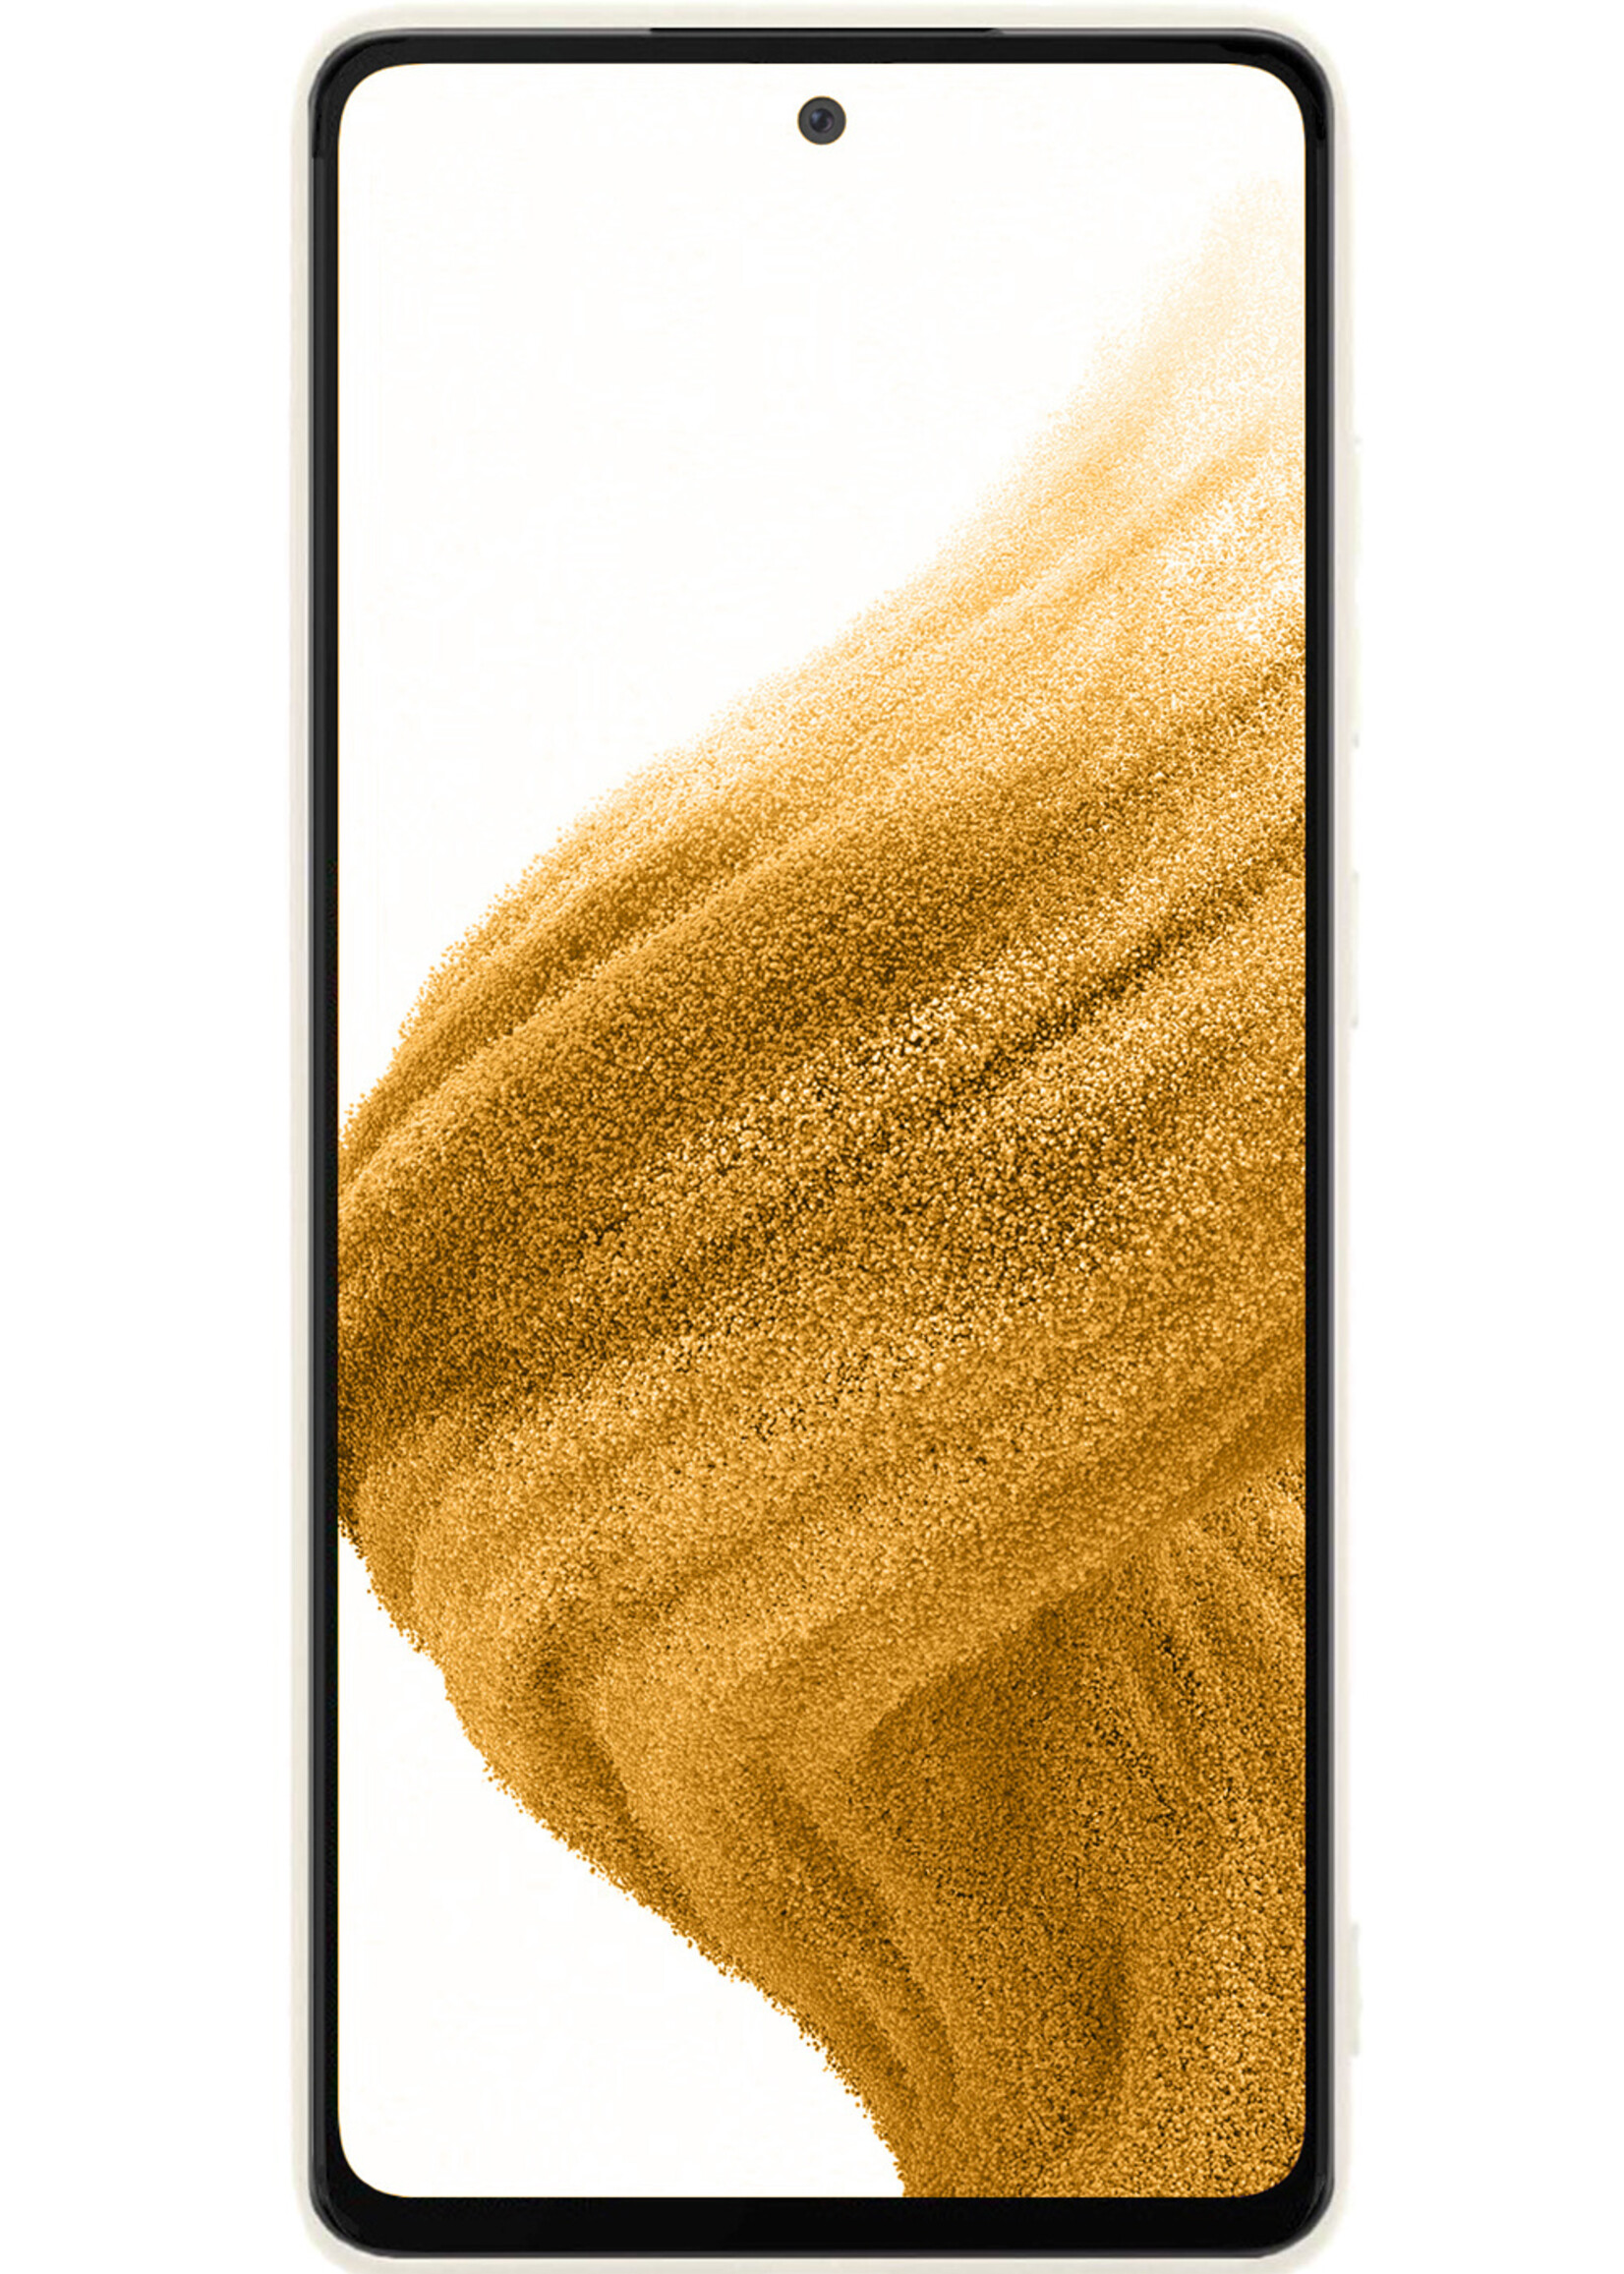 LUQ Hoesje Geschikt voor Samsung A53 Hoesje Siliconen Case - Hoes Geschikt voor Samsung Galaxy A53 Hoes Siliconen - Wit - 2 Stuks